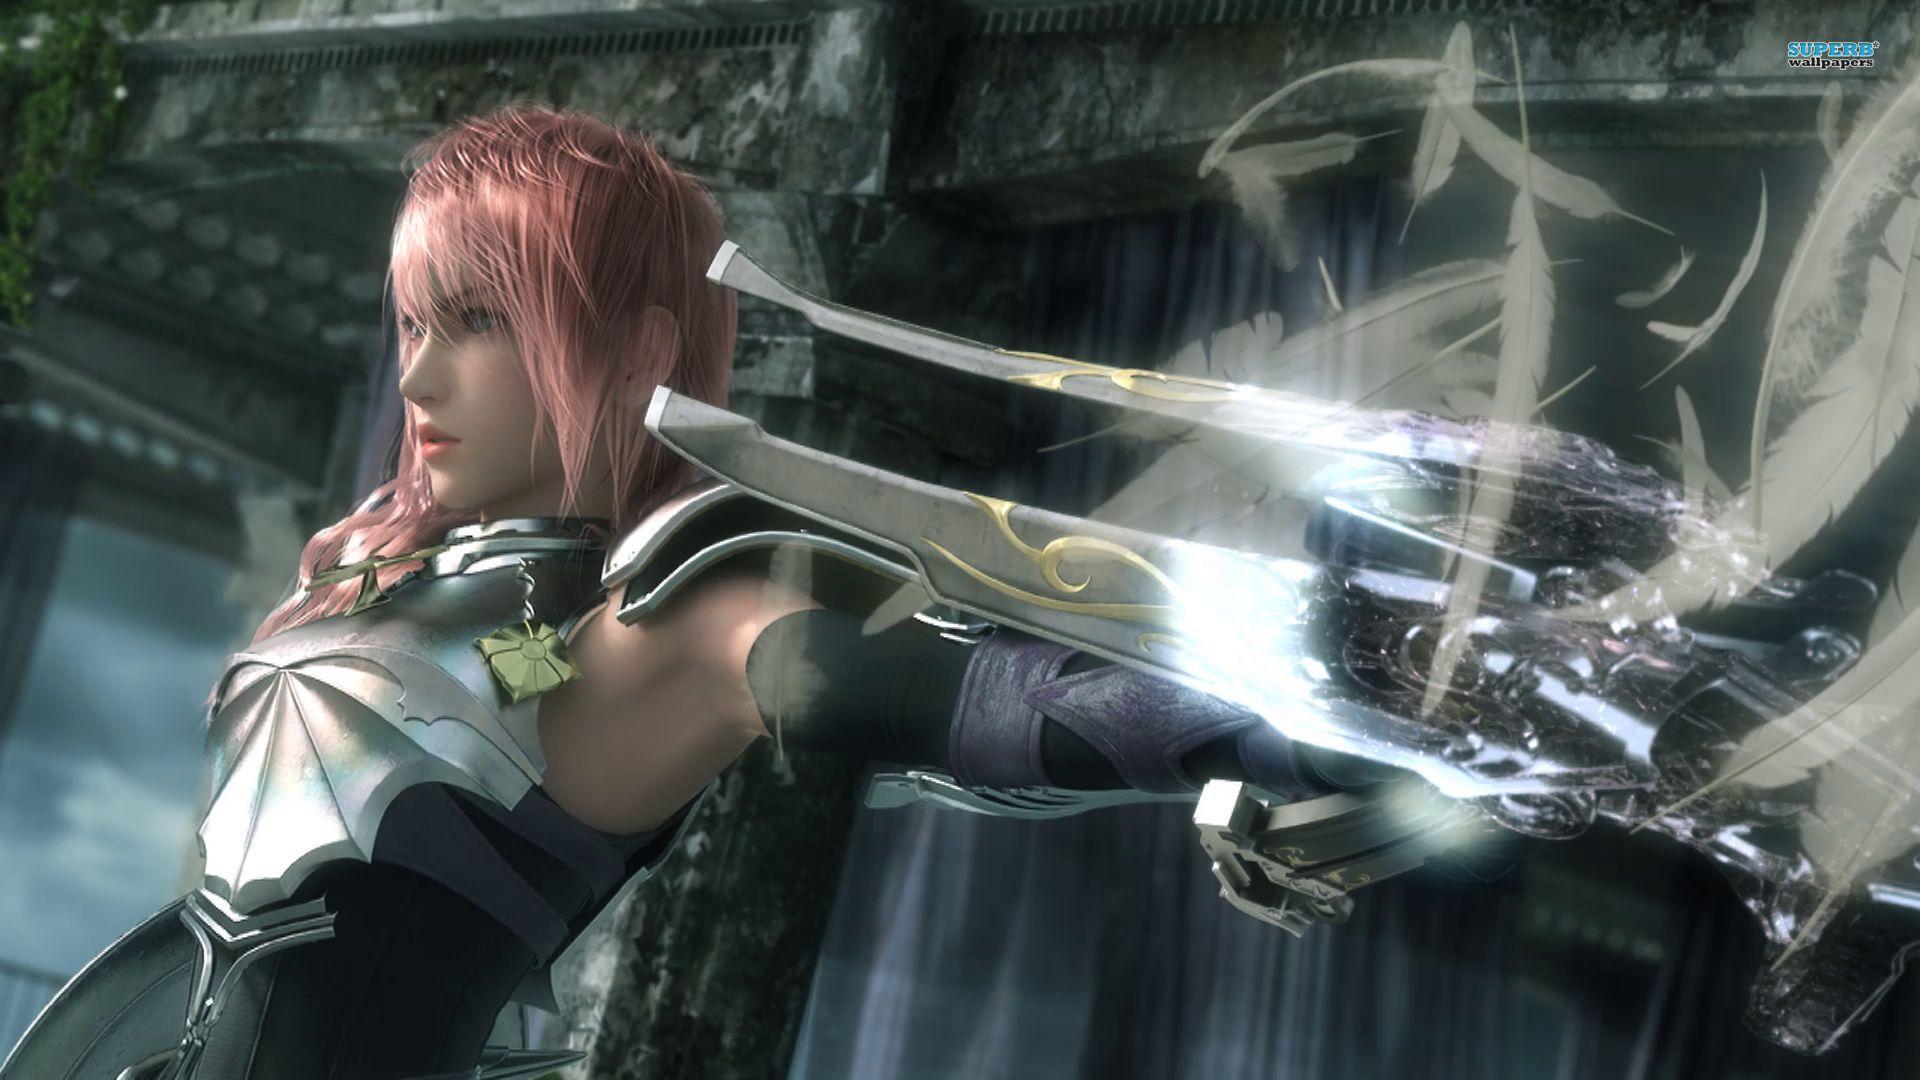 Lightning Final Fantasy Xiii 2